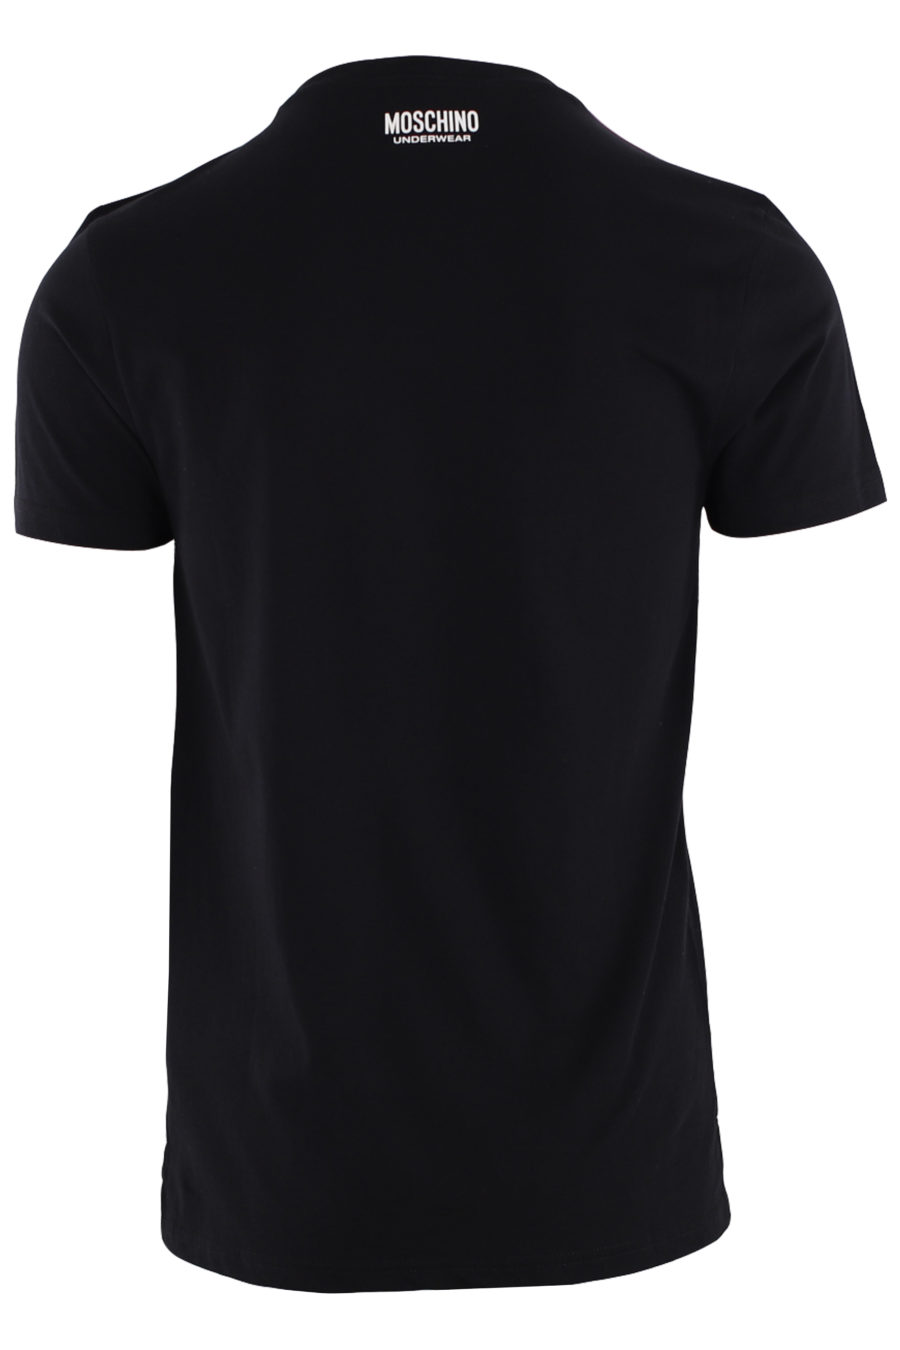 Camiseta negra con logo en cinta en hombros - IMG 8793